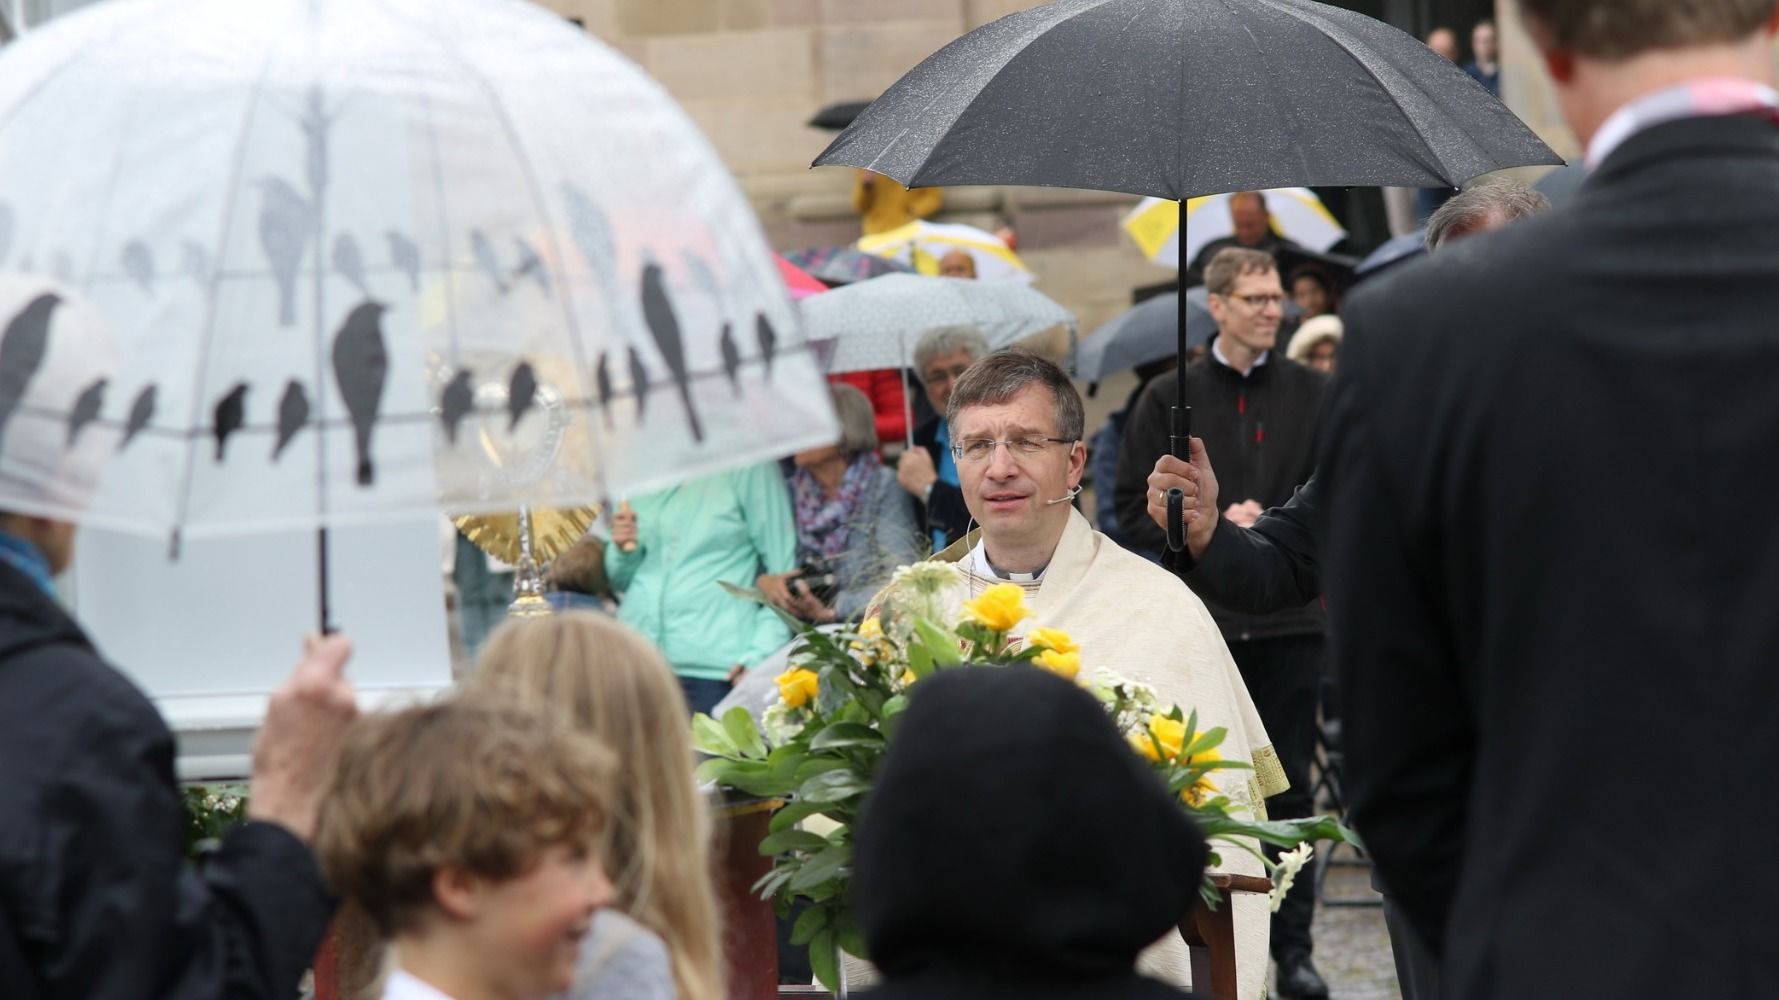 Bischof Gerber feierte 2020 ein besonderes Fronleichnamsfest